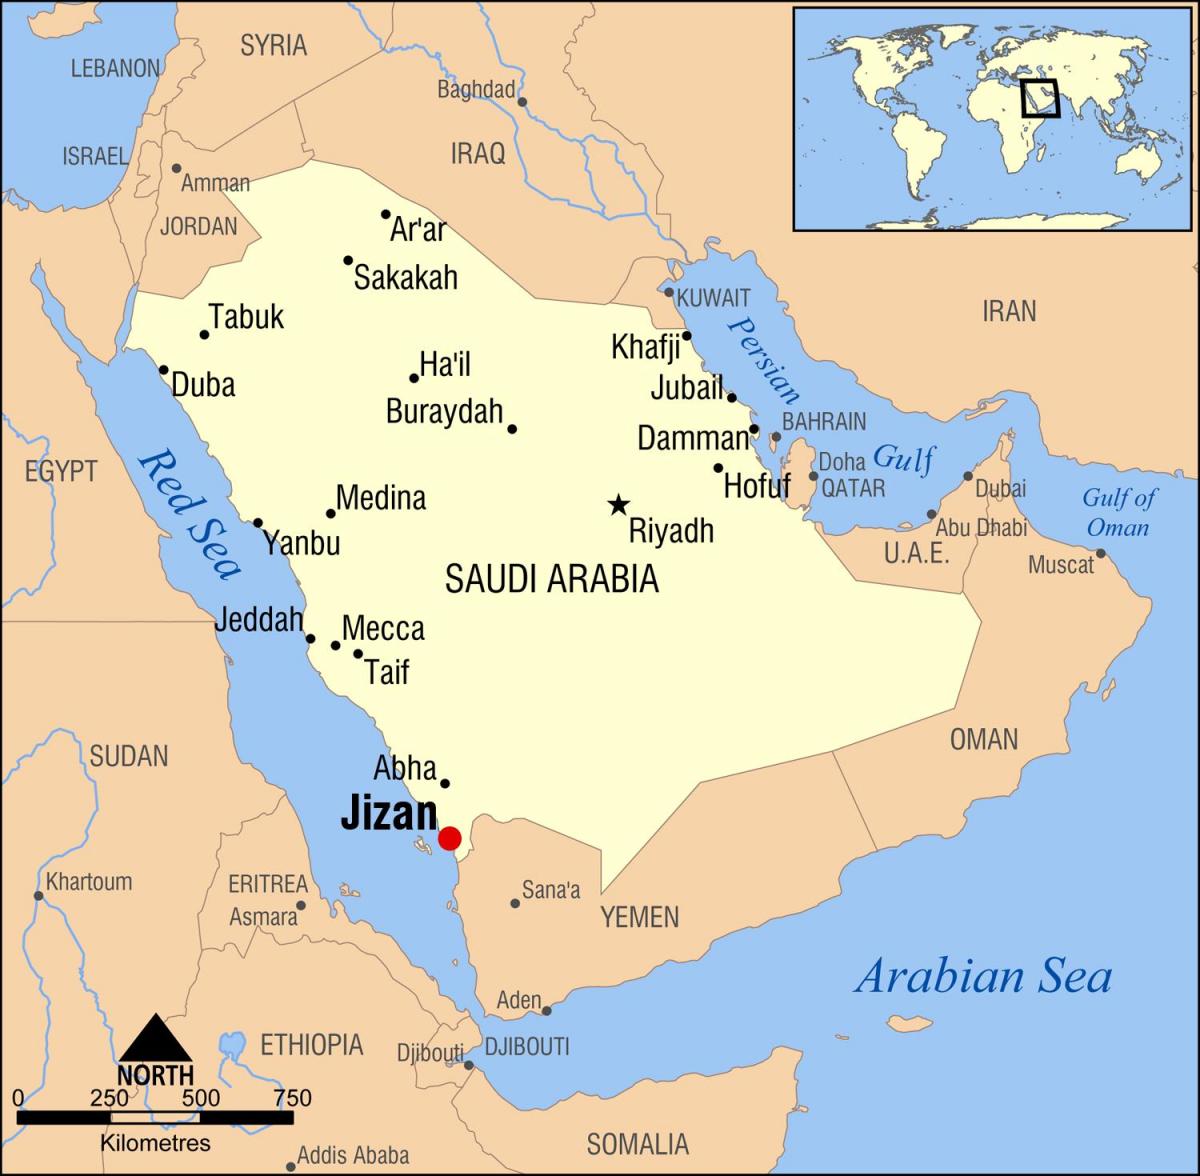 jizan KSA žemėlapyje